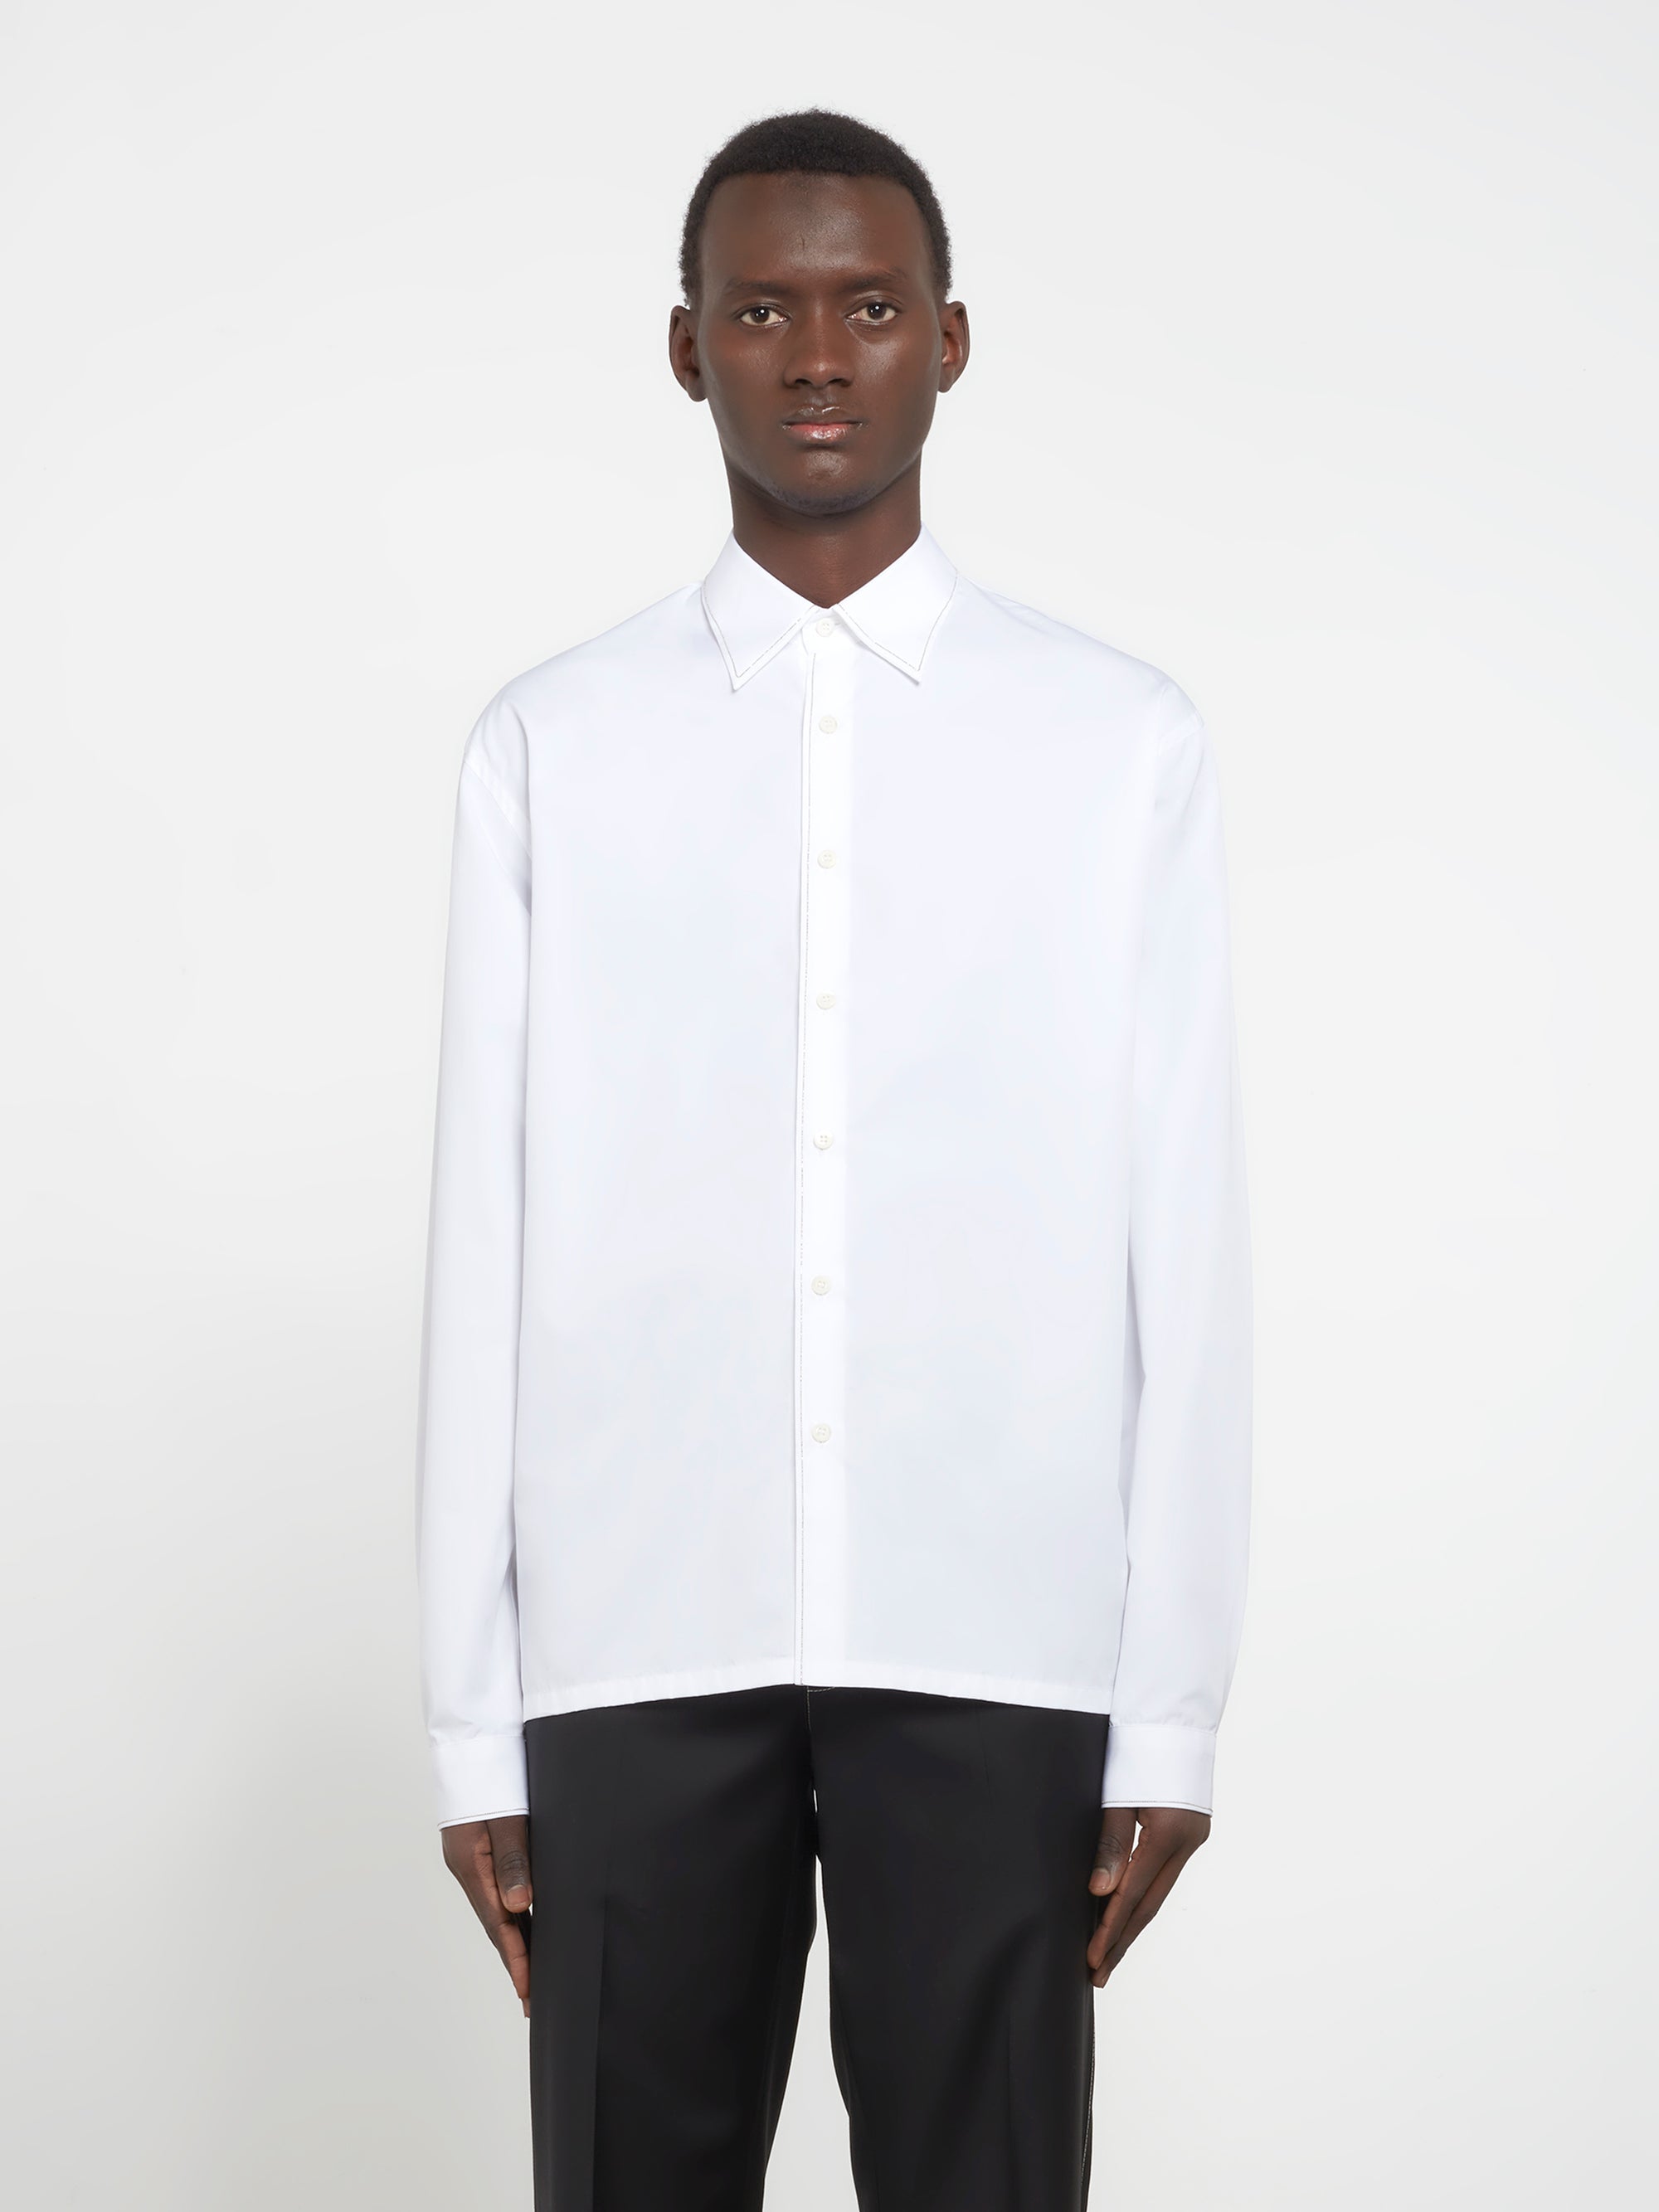 Prada - Men’s Cotton Shirt - (White) view 1